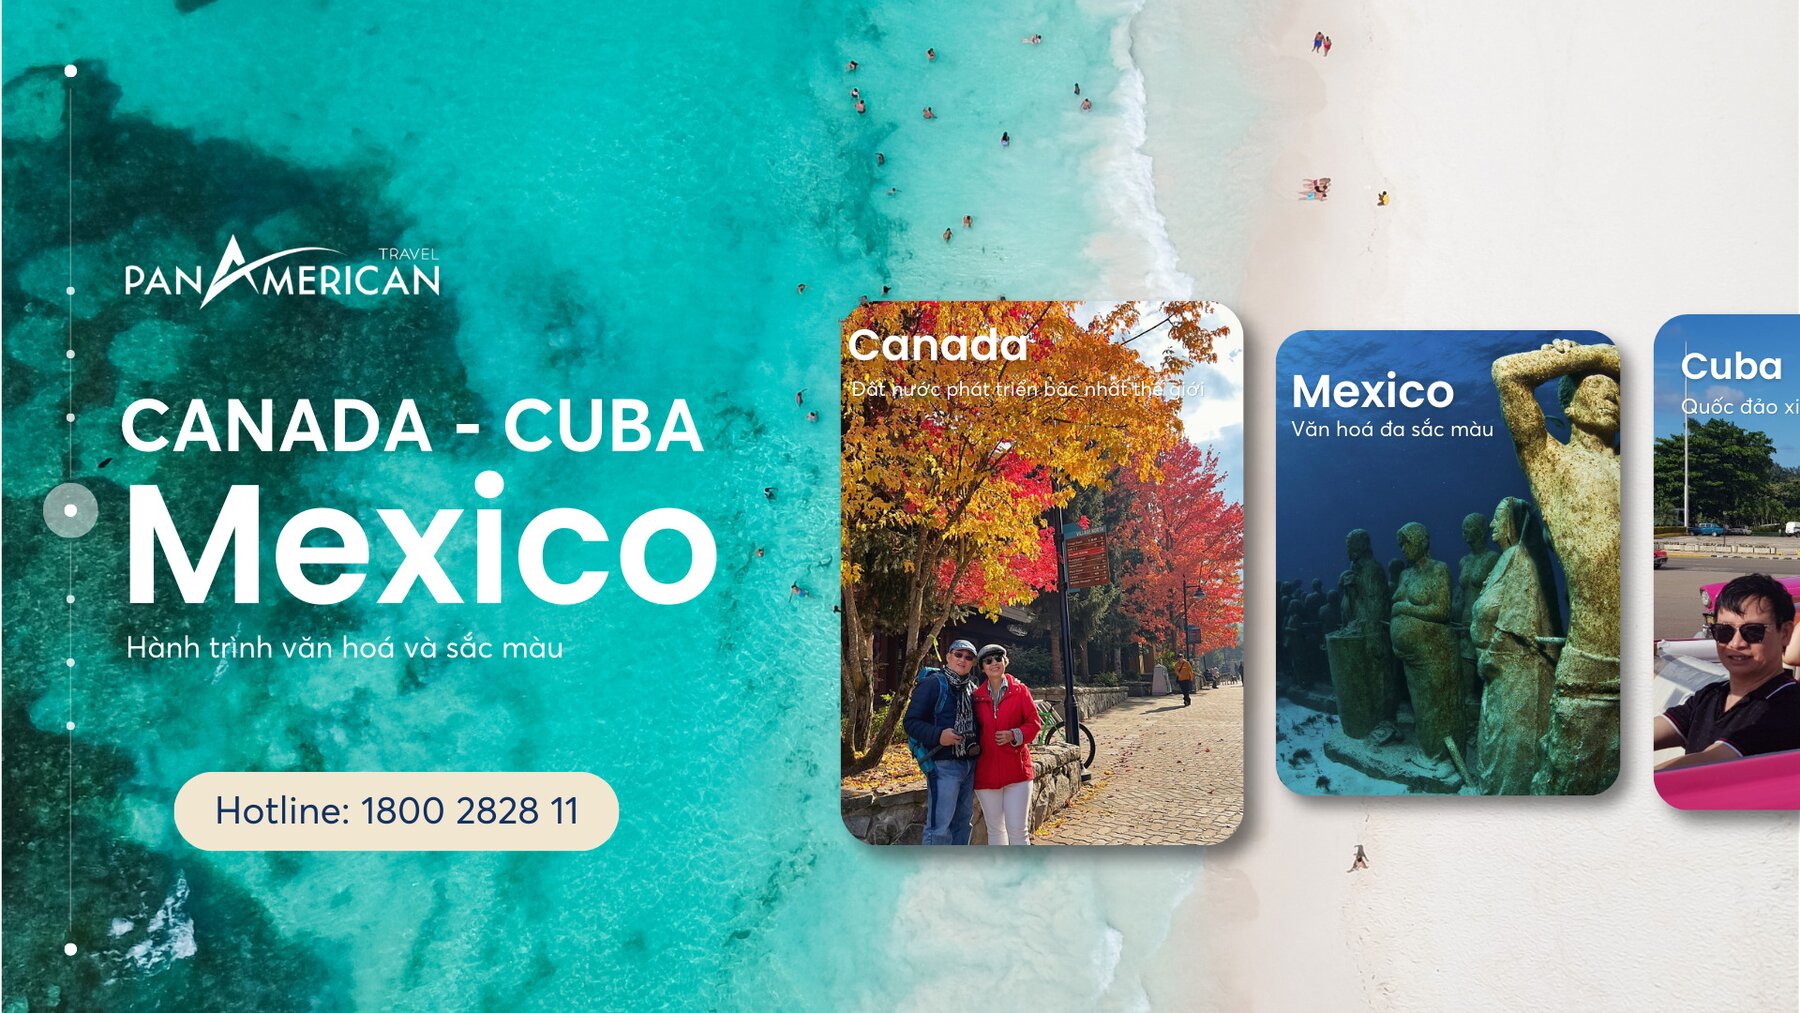 Hành trình Canada - Cuba - Mexico của Pan American Travel 